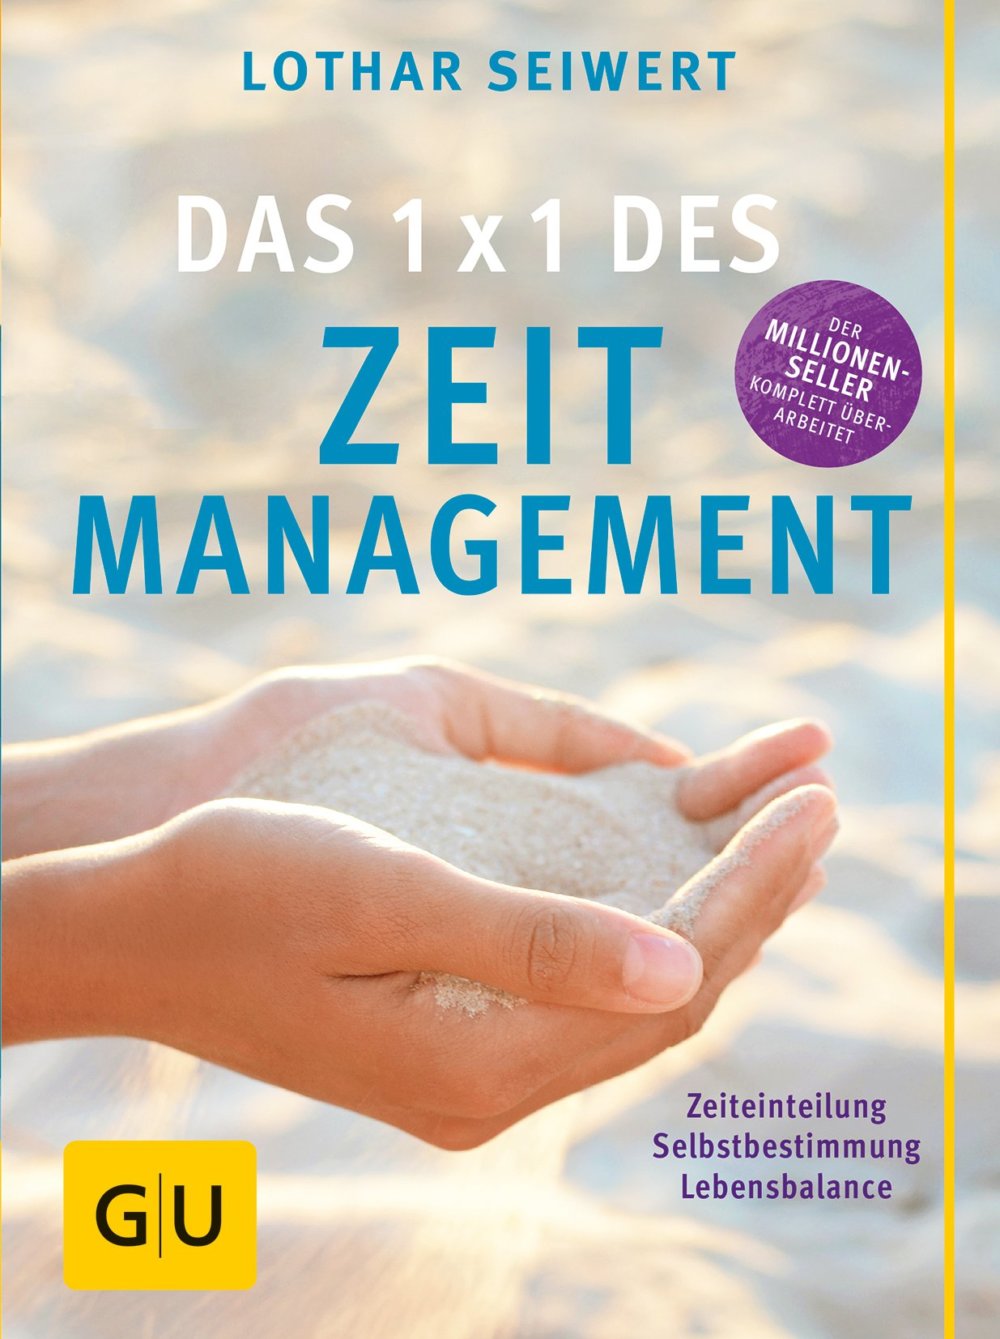 Sicherlich einer der bekanntesten Trainer zum Thema Zeitmanagement: Lothar Seiwert - hier im GU-Buch: "Das 1x1 des Zeitmanagement: Zeiteinteilung, Selbstbestimmung, Lebensbalance" (Amazon)